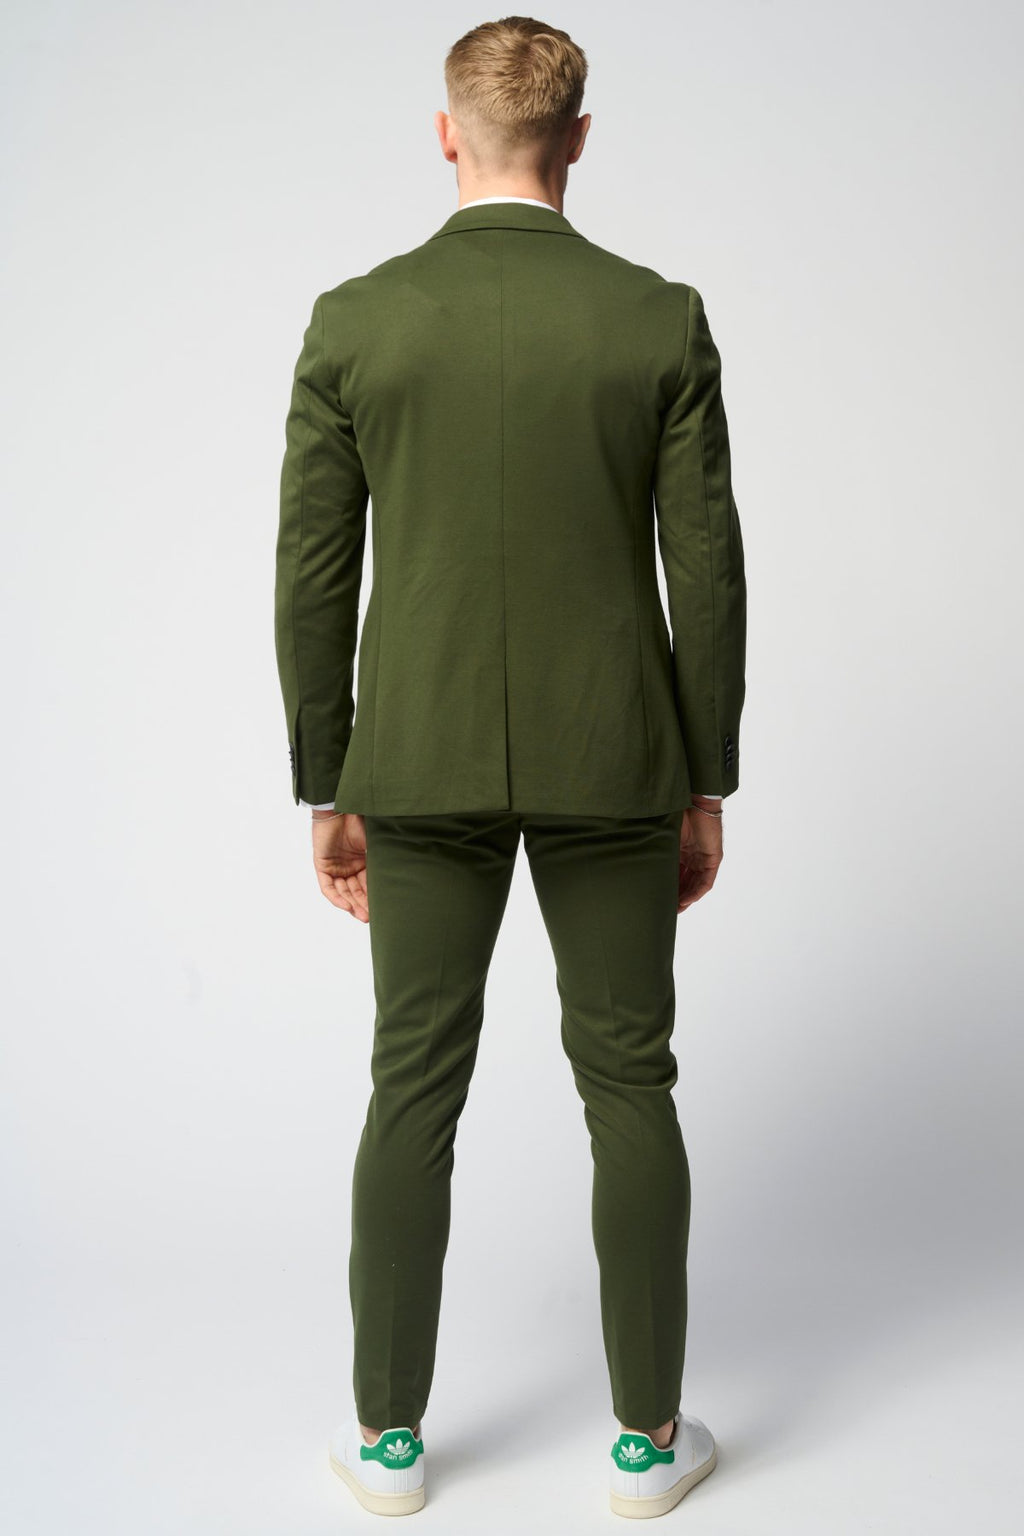 Performance Kostiumas ™ ️ (tamsiai žalia) + Performance Marškiniai - paketo sandoris